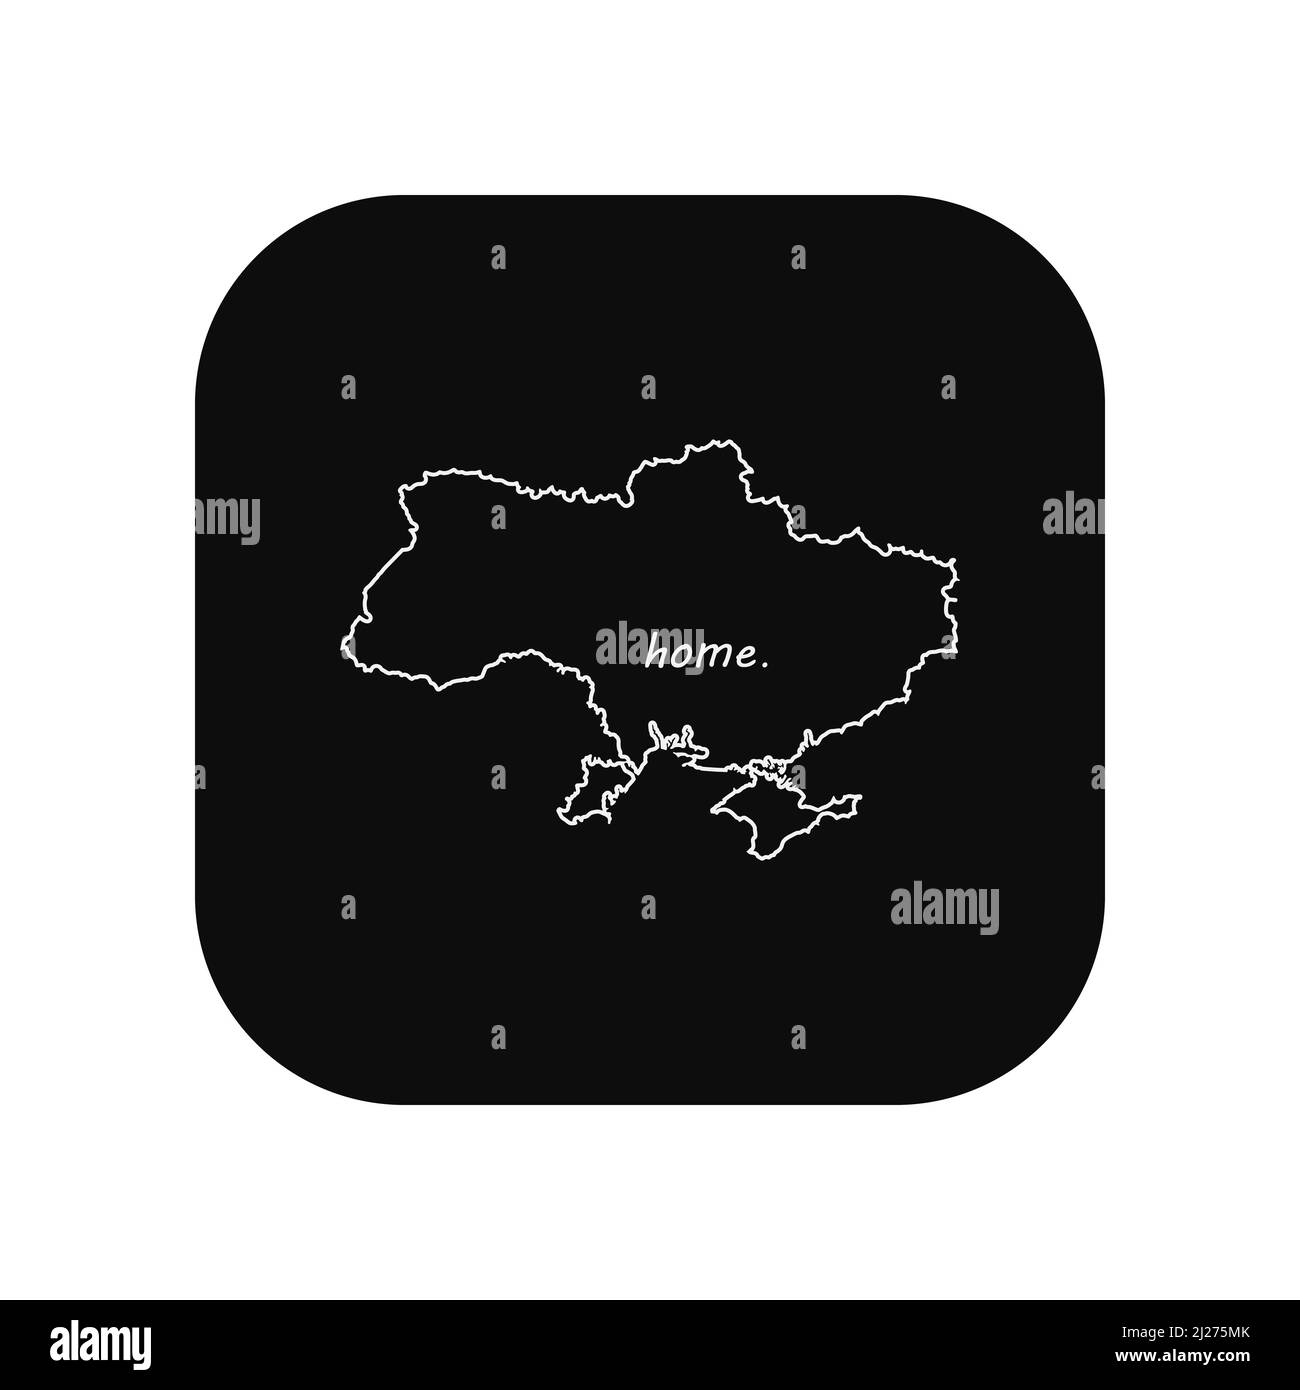 Icona per l'uso in applicazioni di vari gadget. Mappa del paese l'Ucraina è la mia casa. Stile minimalista e piatto. Illustrazione Vettoriale